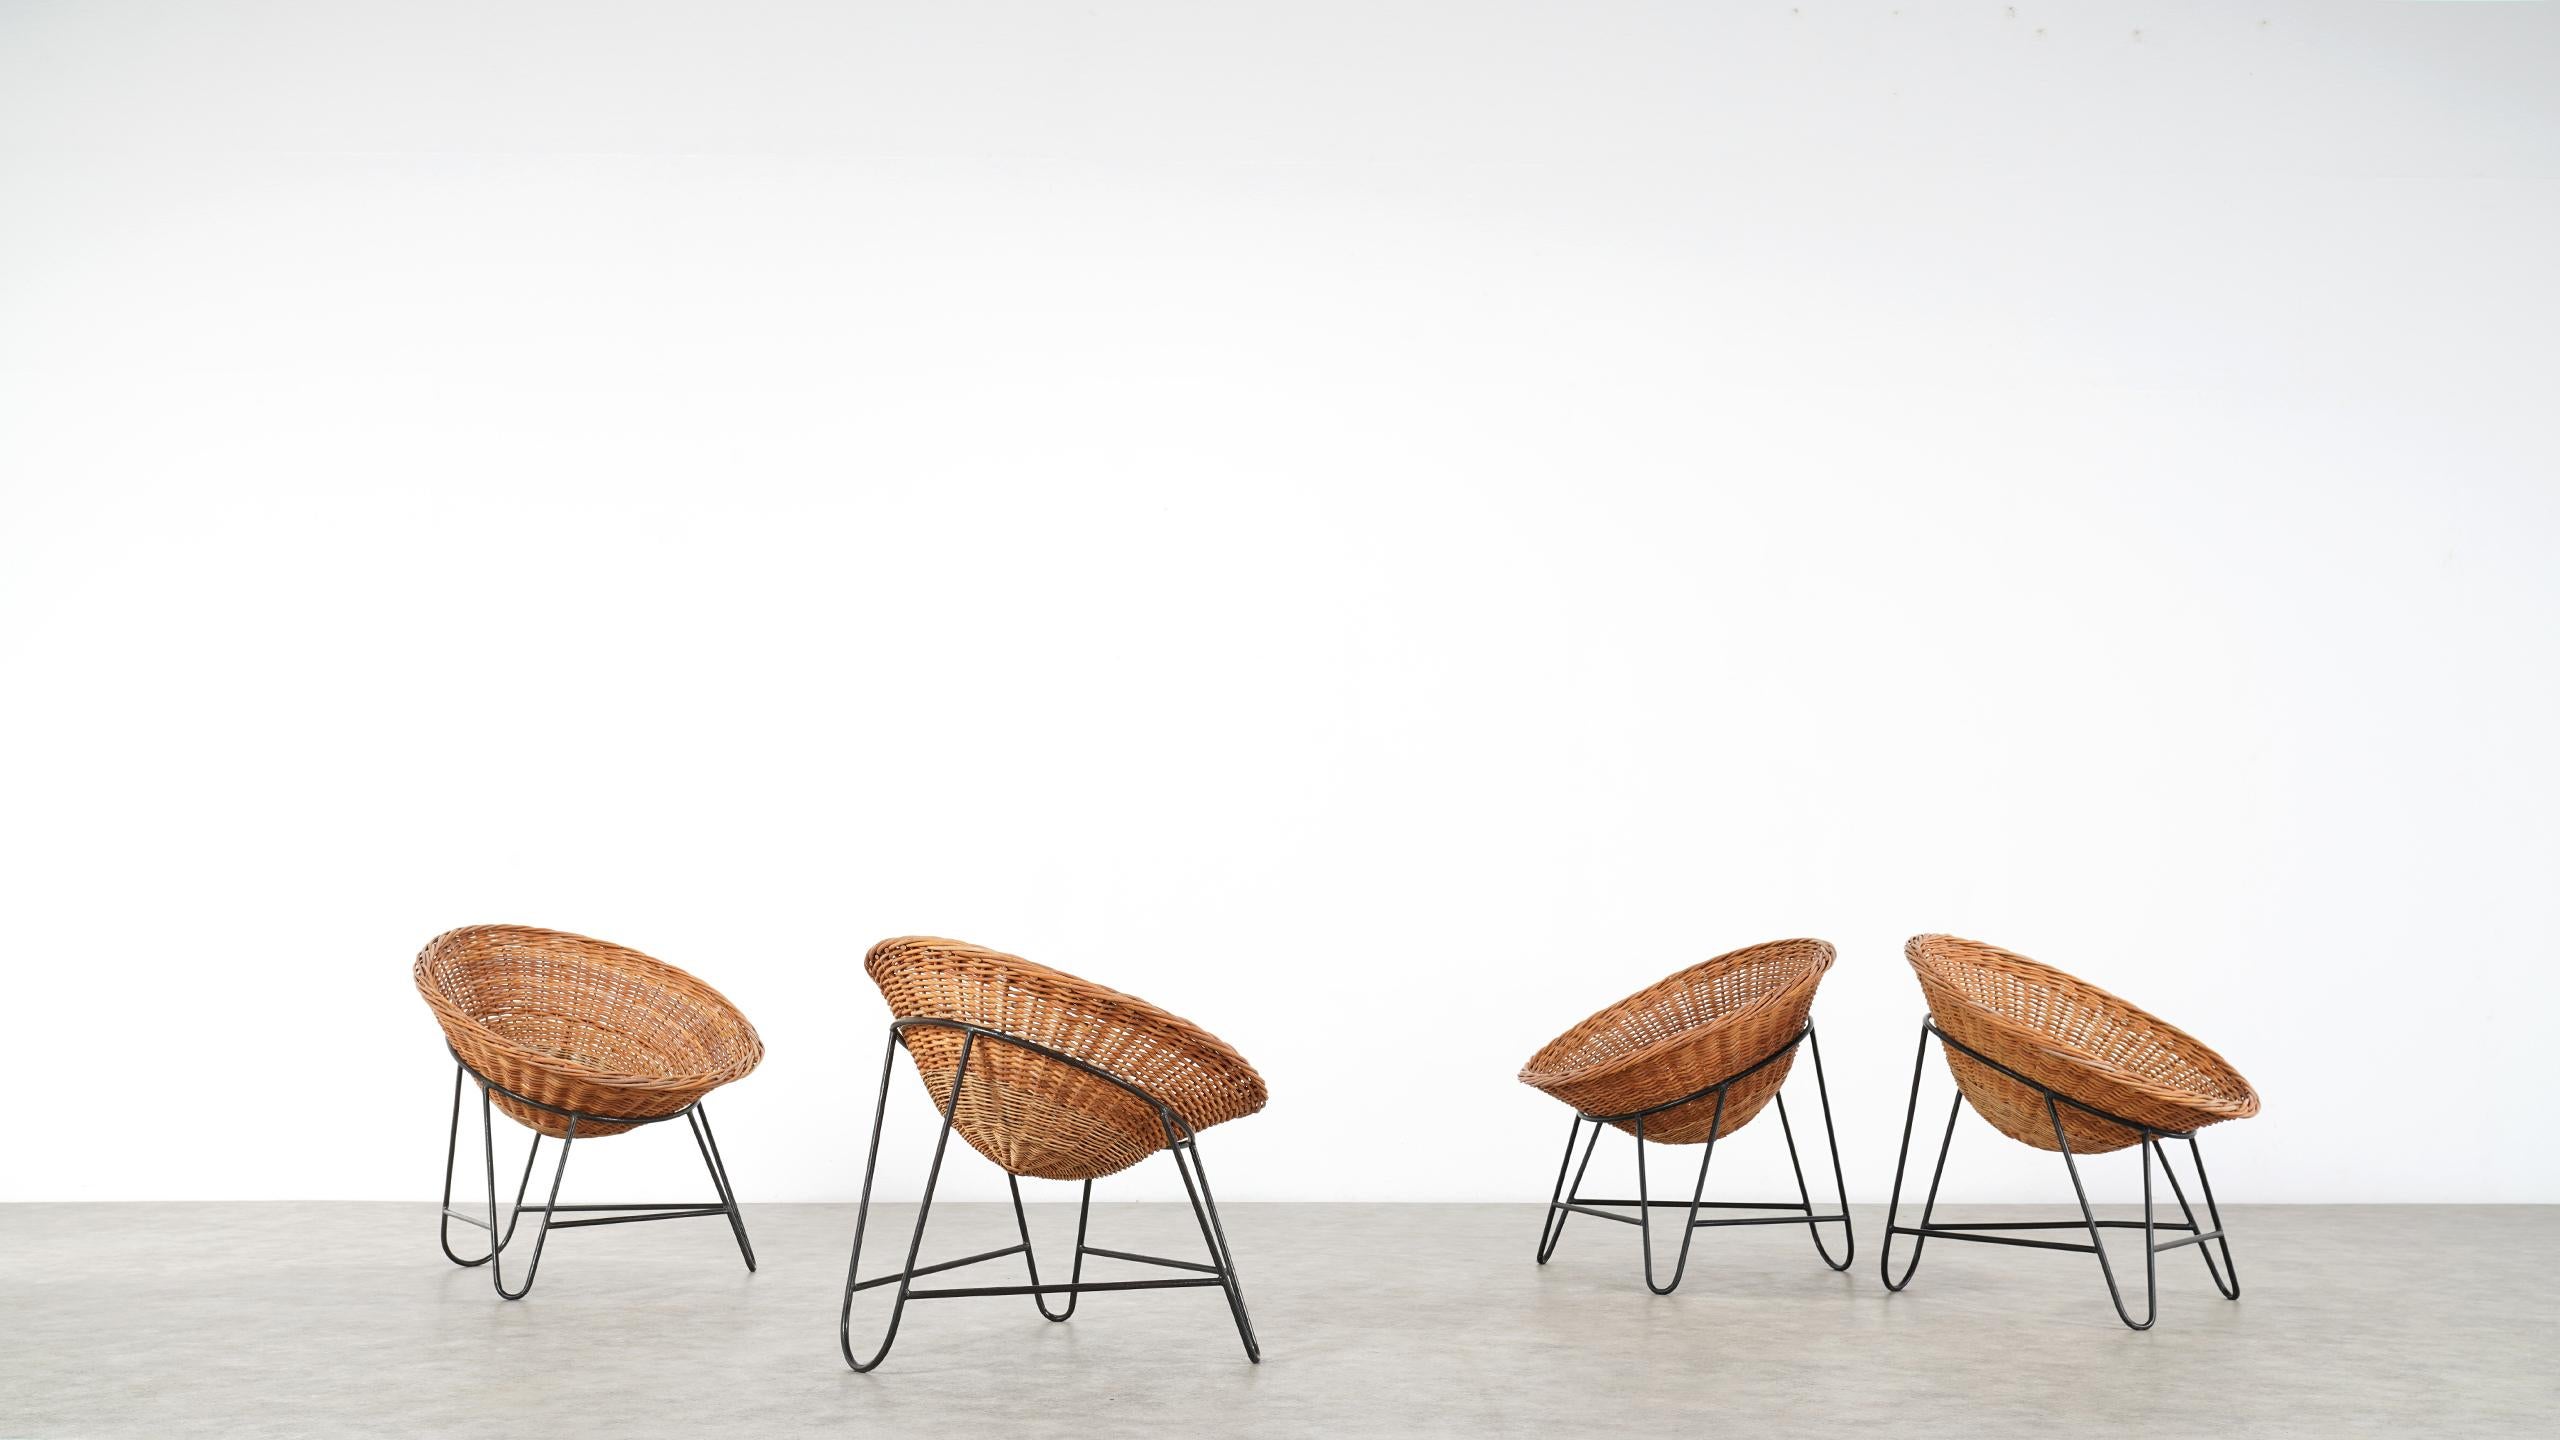 4 Modernist Wicker Chair in style of Mathieu Matégot circa 1950, France Tripod 8